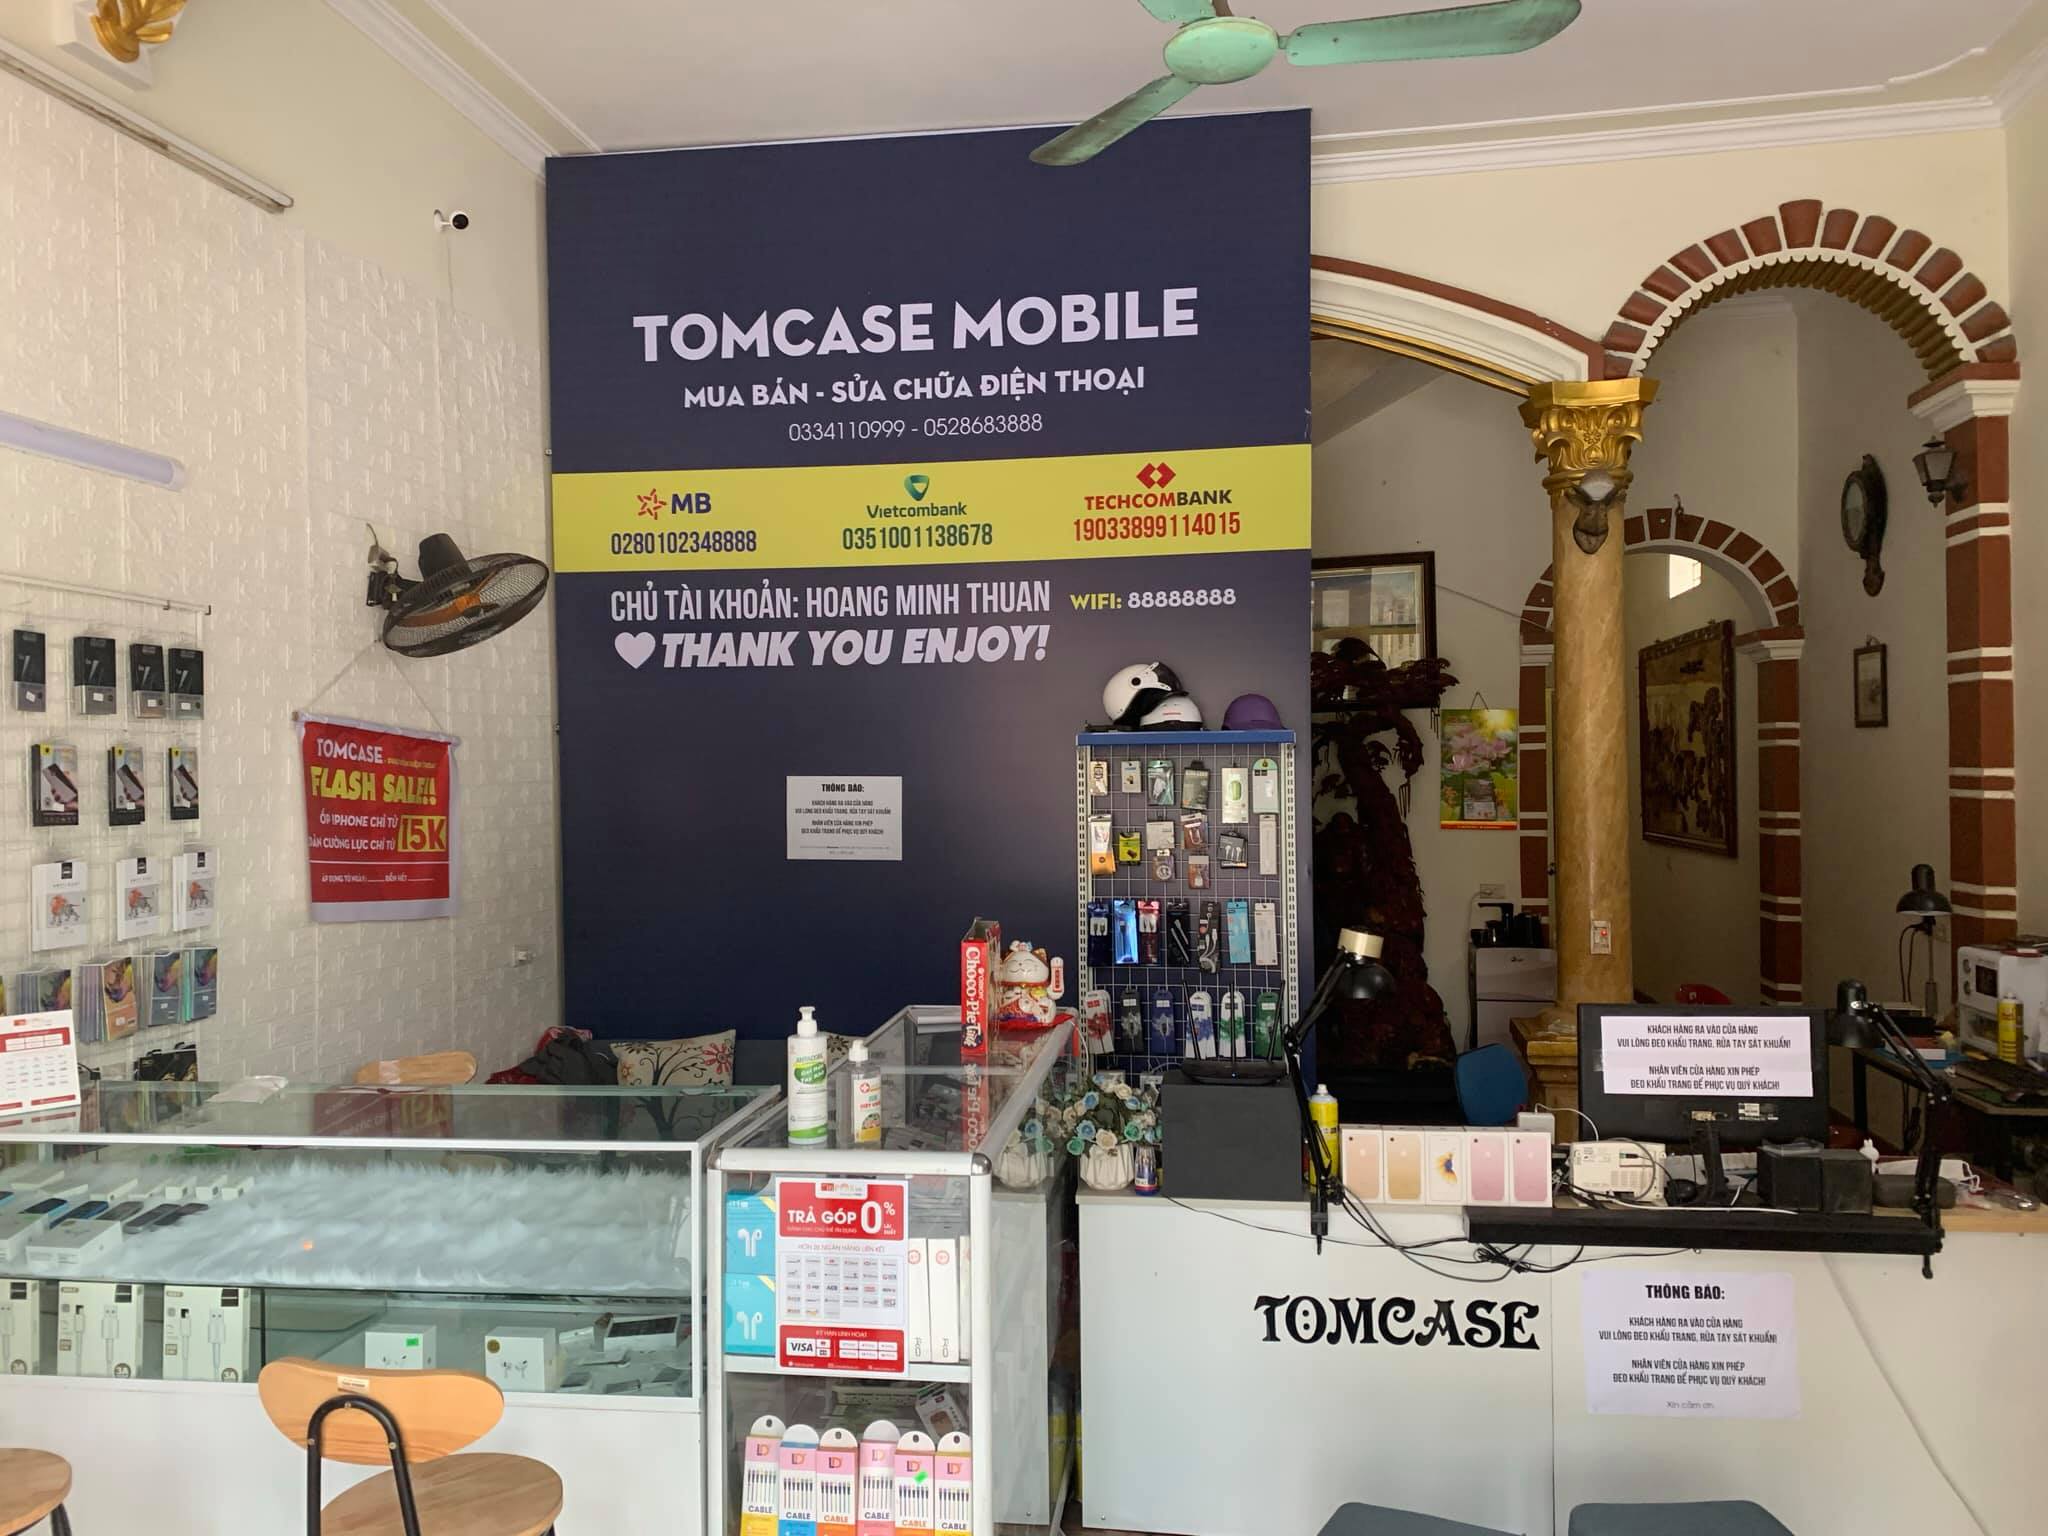 Tomcase Mobile - điện thoại và phụ kiện ảnh 2